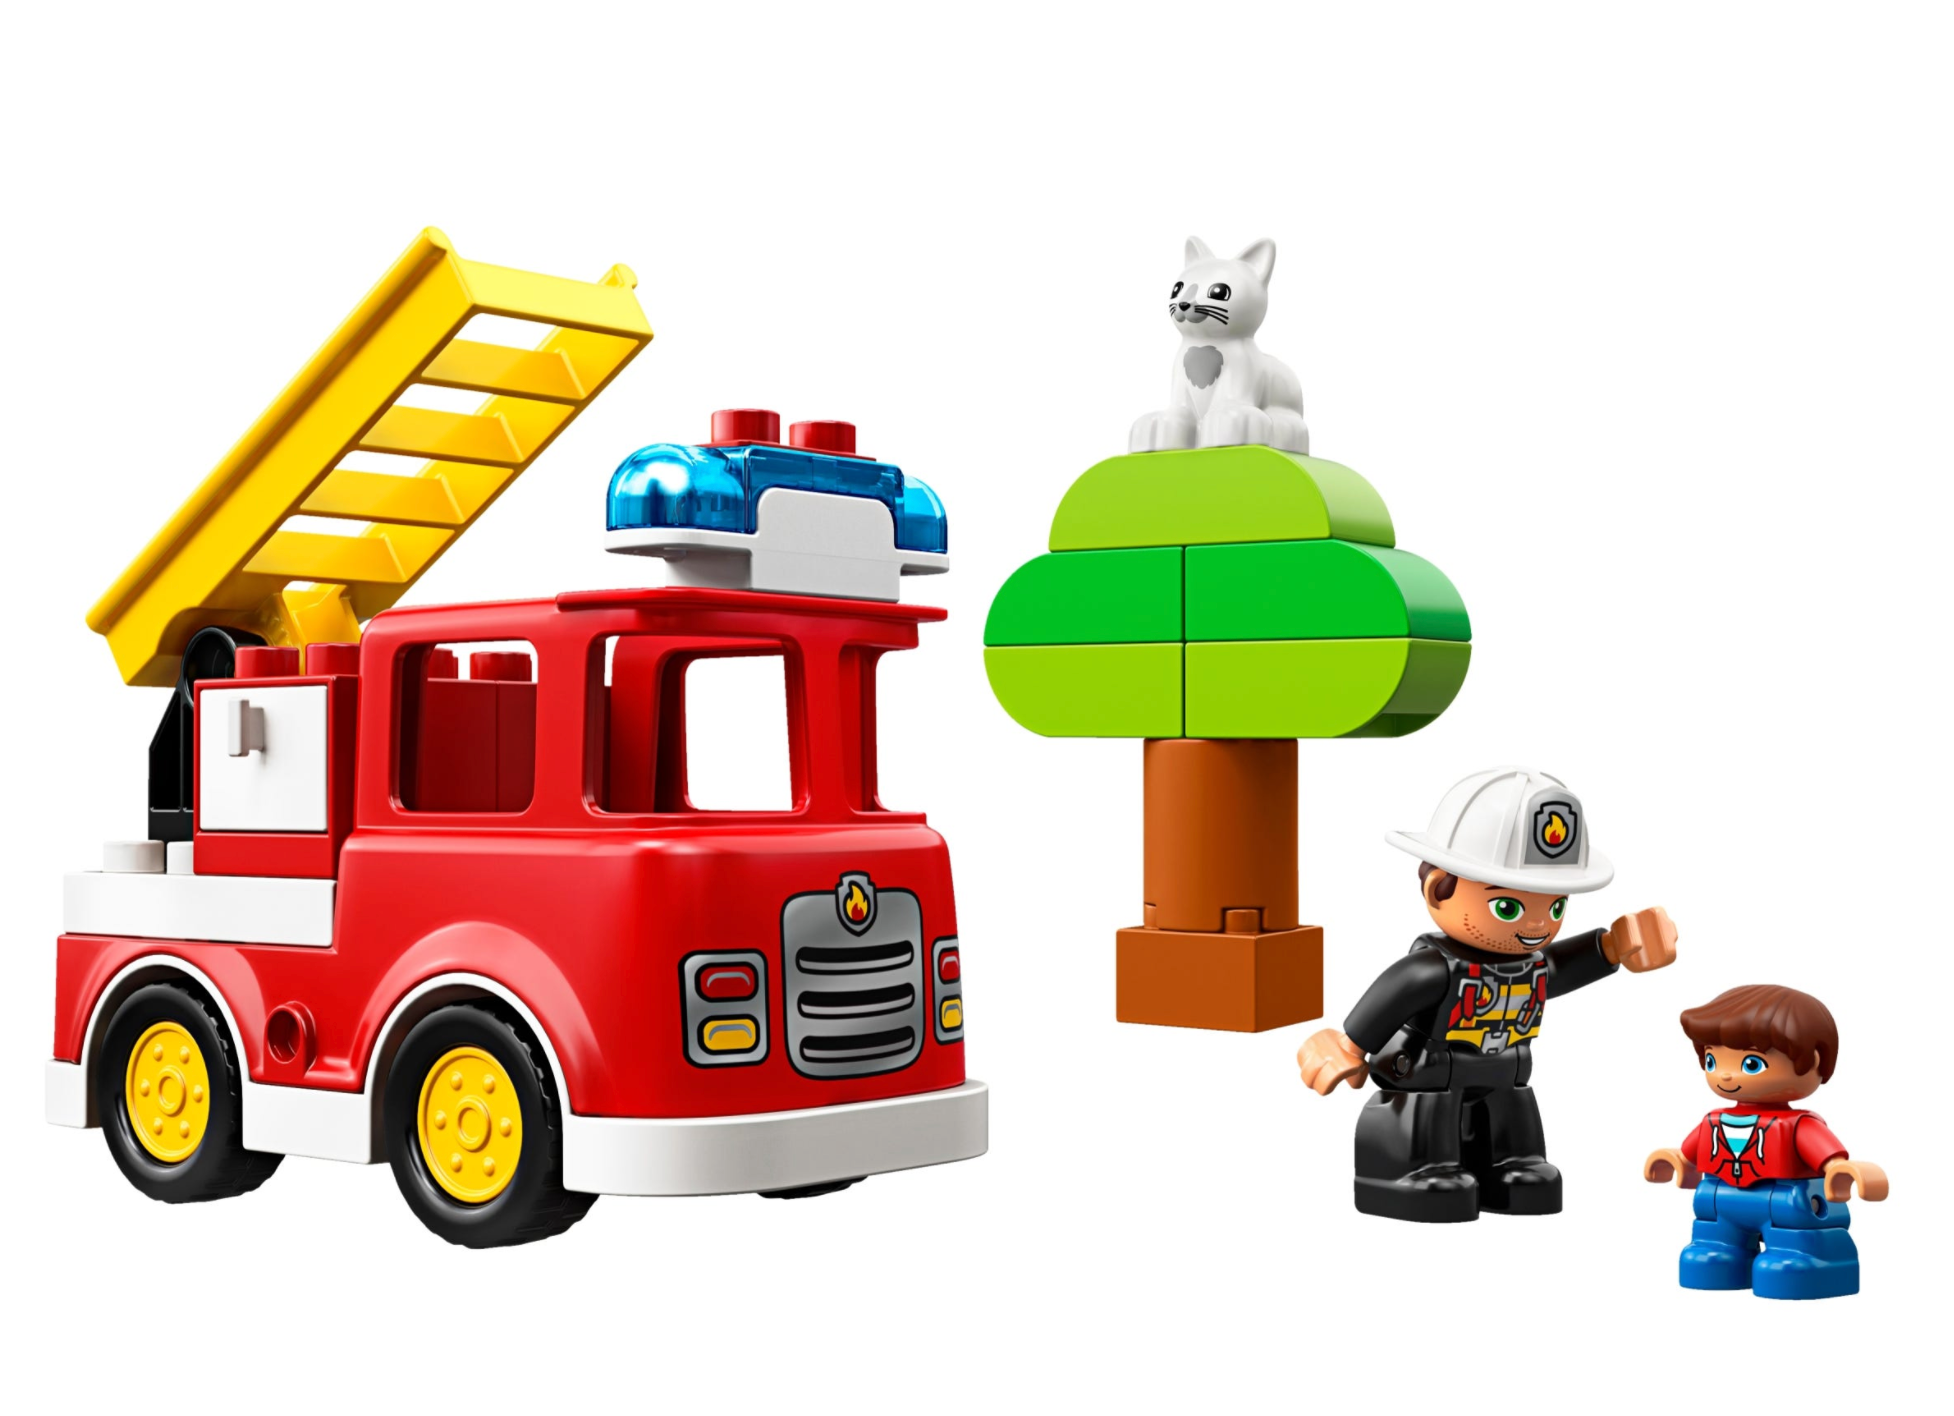 LEGO: DUPLO - Fire Truck